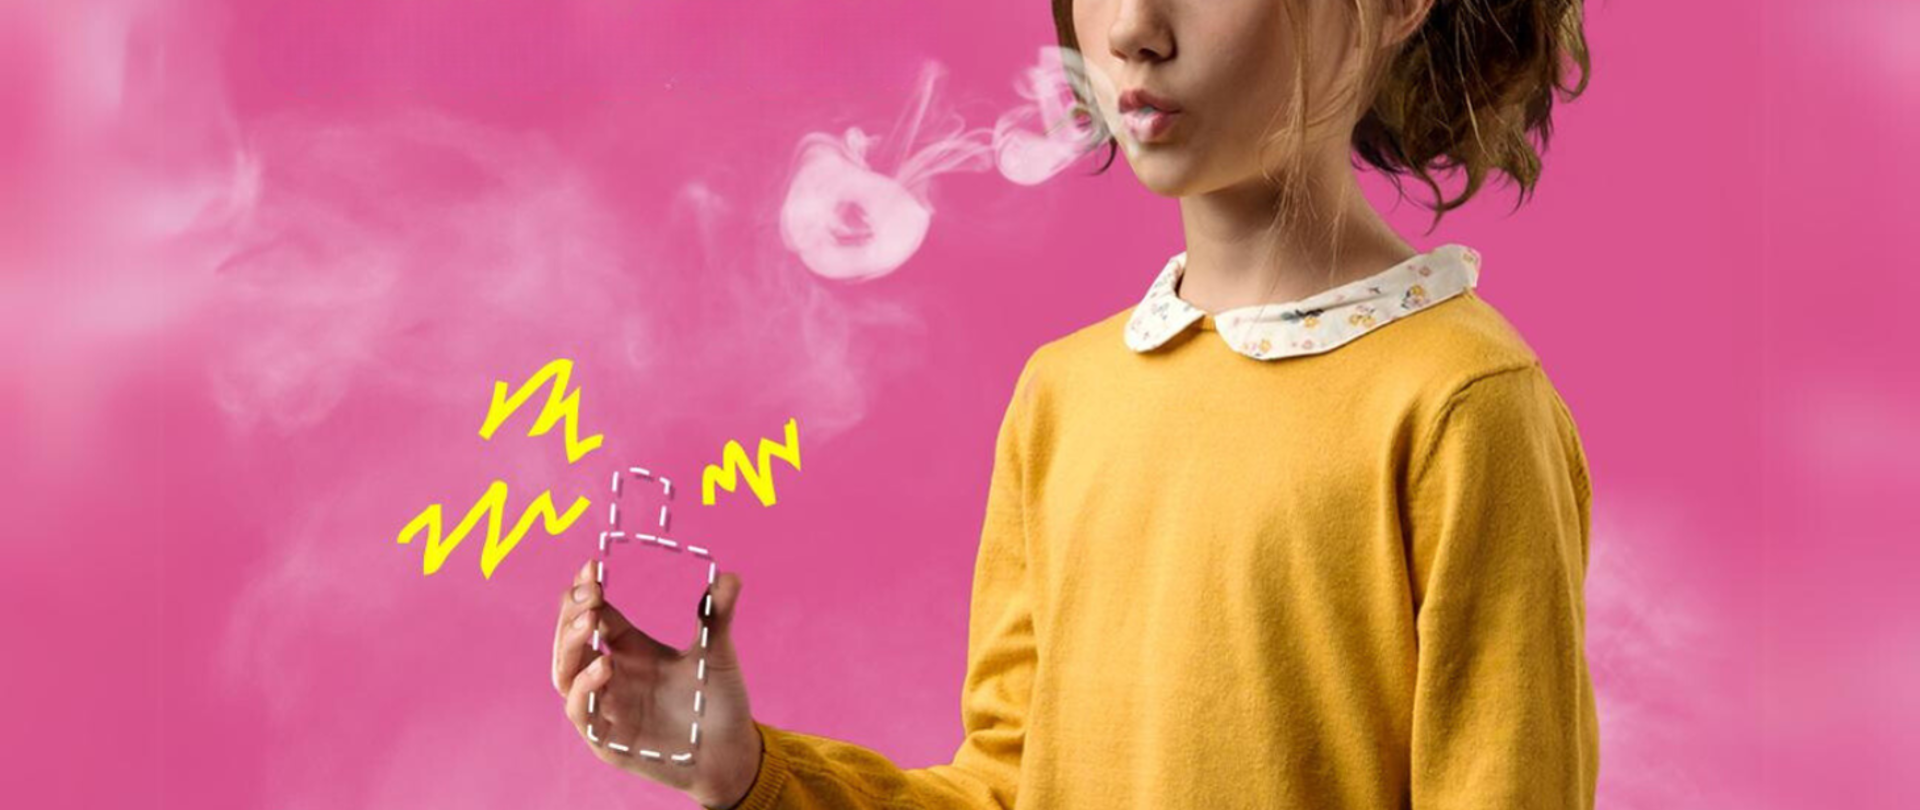 Dziewczynka, z której ust wydobywa się dym tytoniowy. W ręce trzyma dorysowany IQOS, urządzenie do podgrzewania tytoniu.